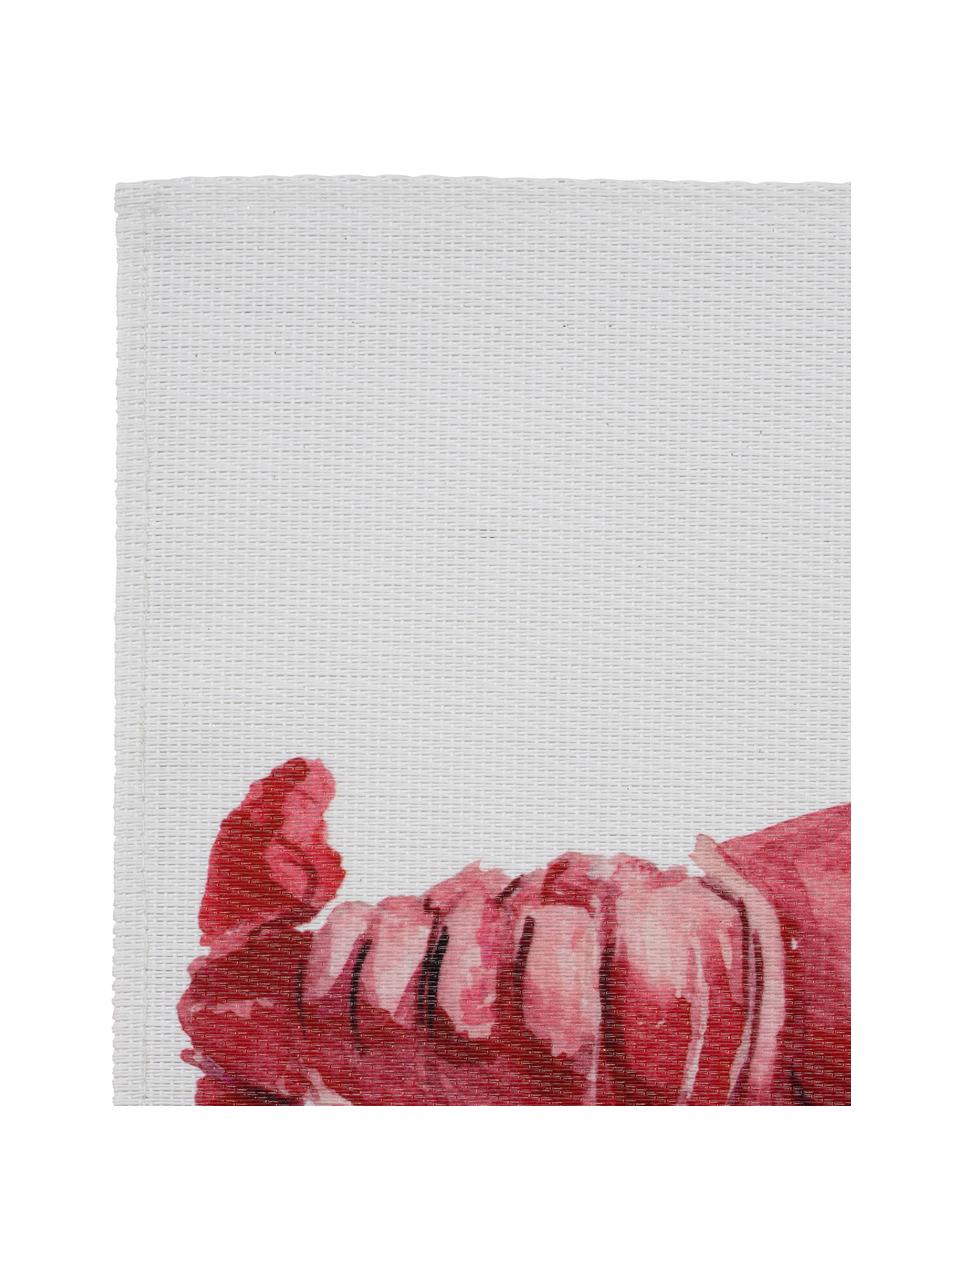 Podkładka Ocean, Poliester, Biały, czerwony, S 30 x D 45 cm